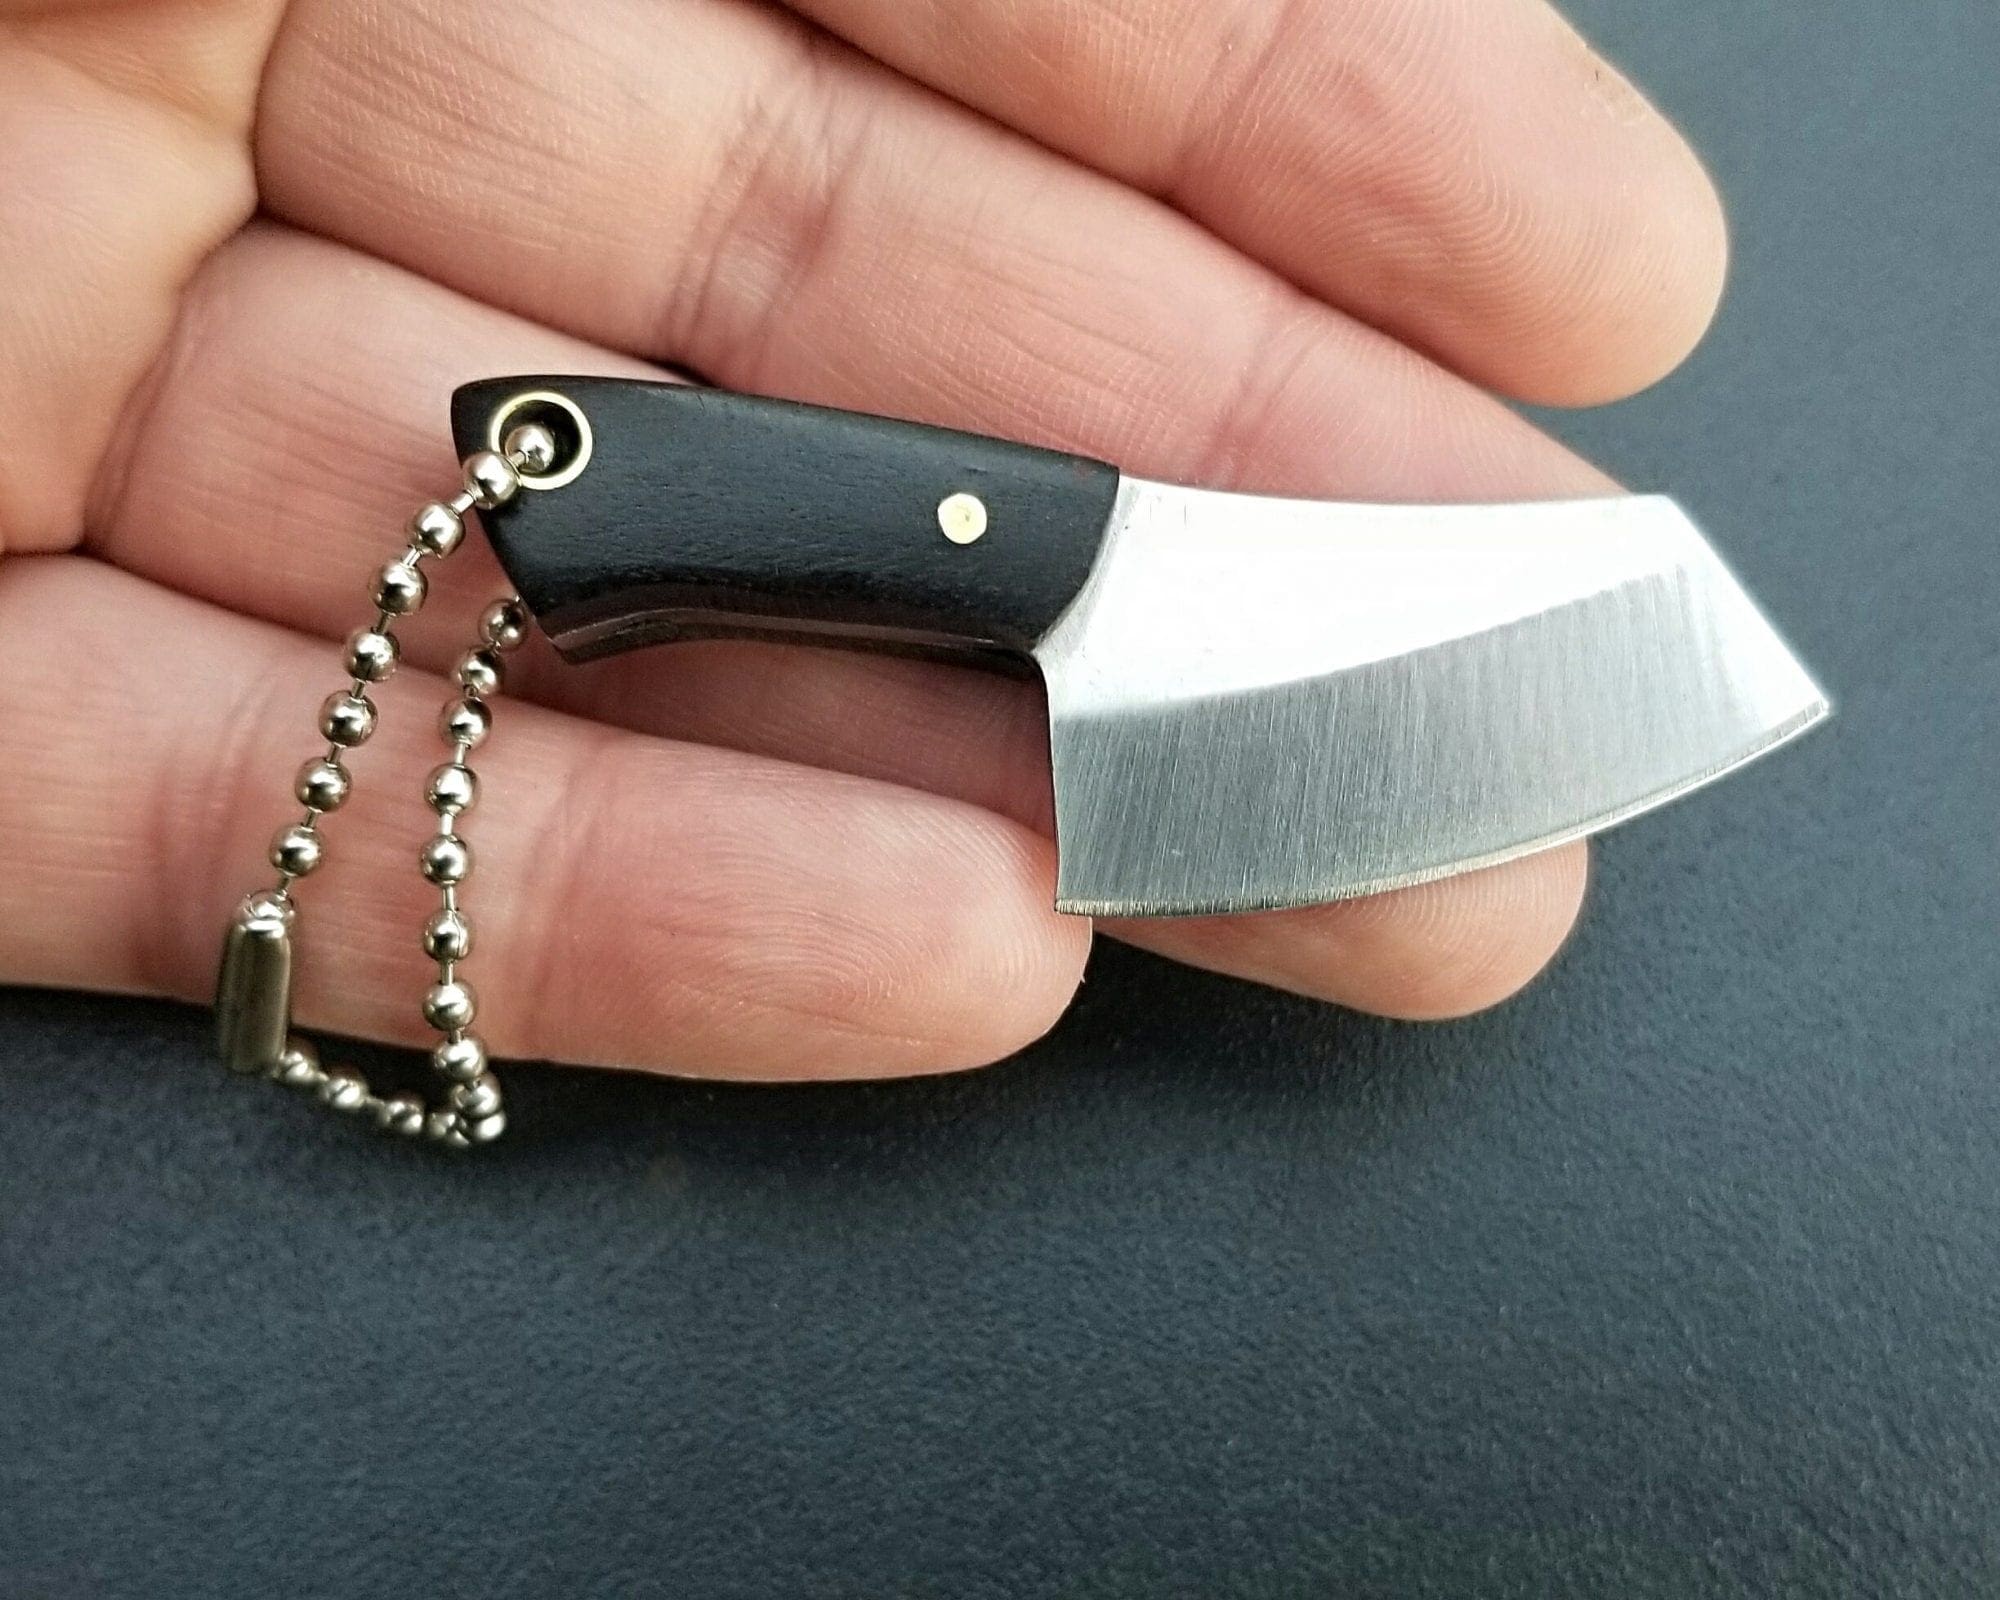 Mini Knife, Mini Butcher Knife, Tiny Knife